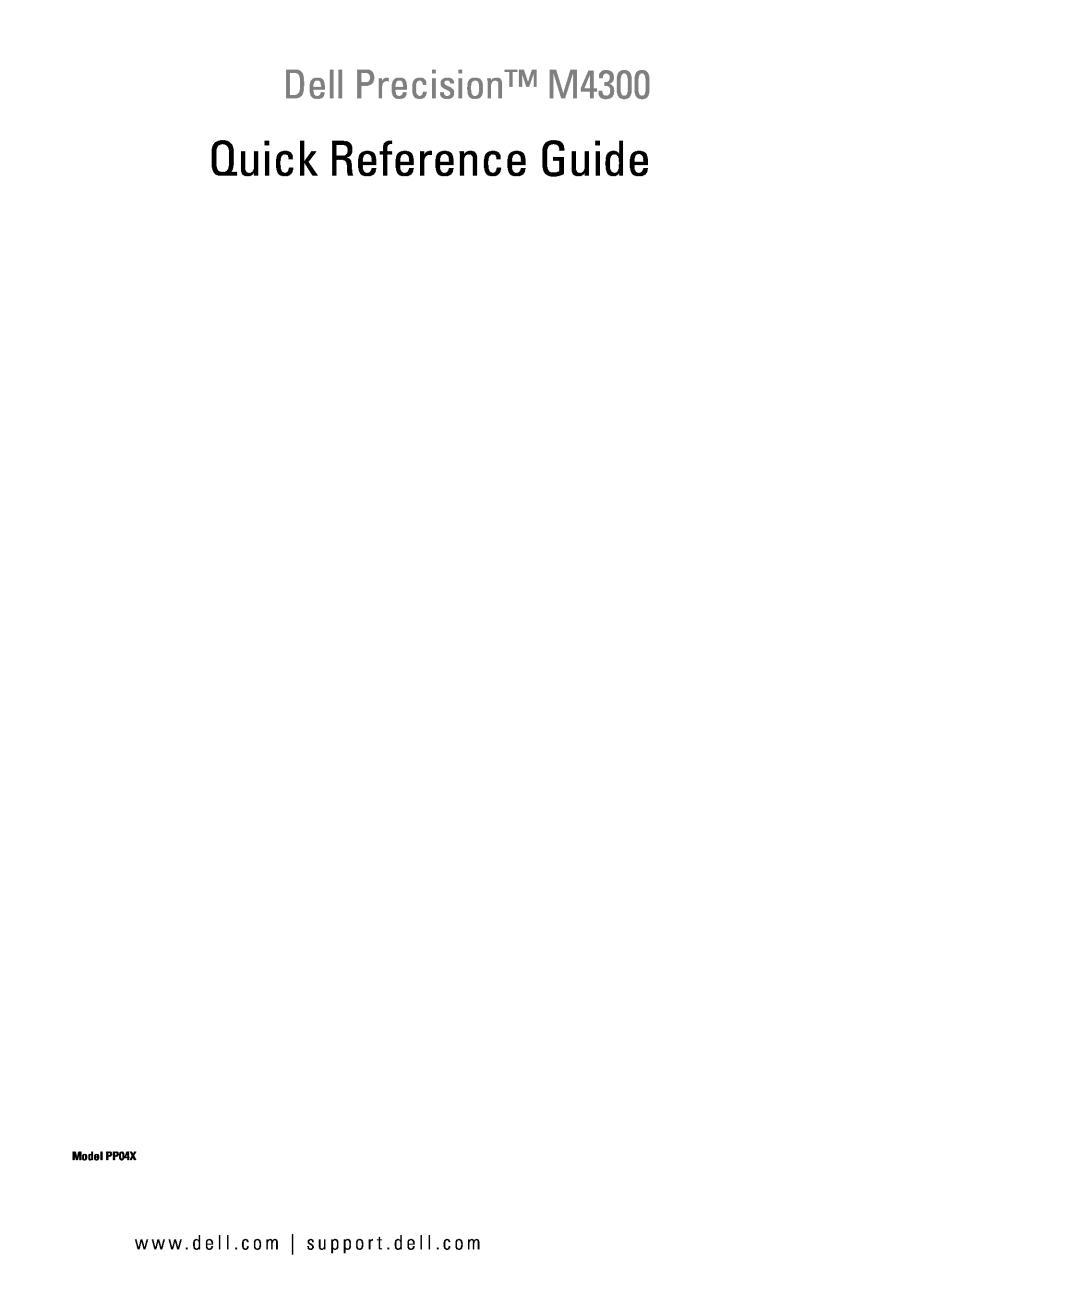 Dell GU806 manual Quick Reference Guide, Dell Precision M4300, w w w . d e l l . c o m s u p p o r t . d e l l . c o m 